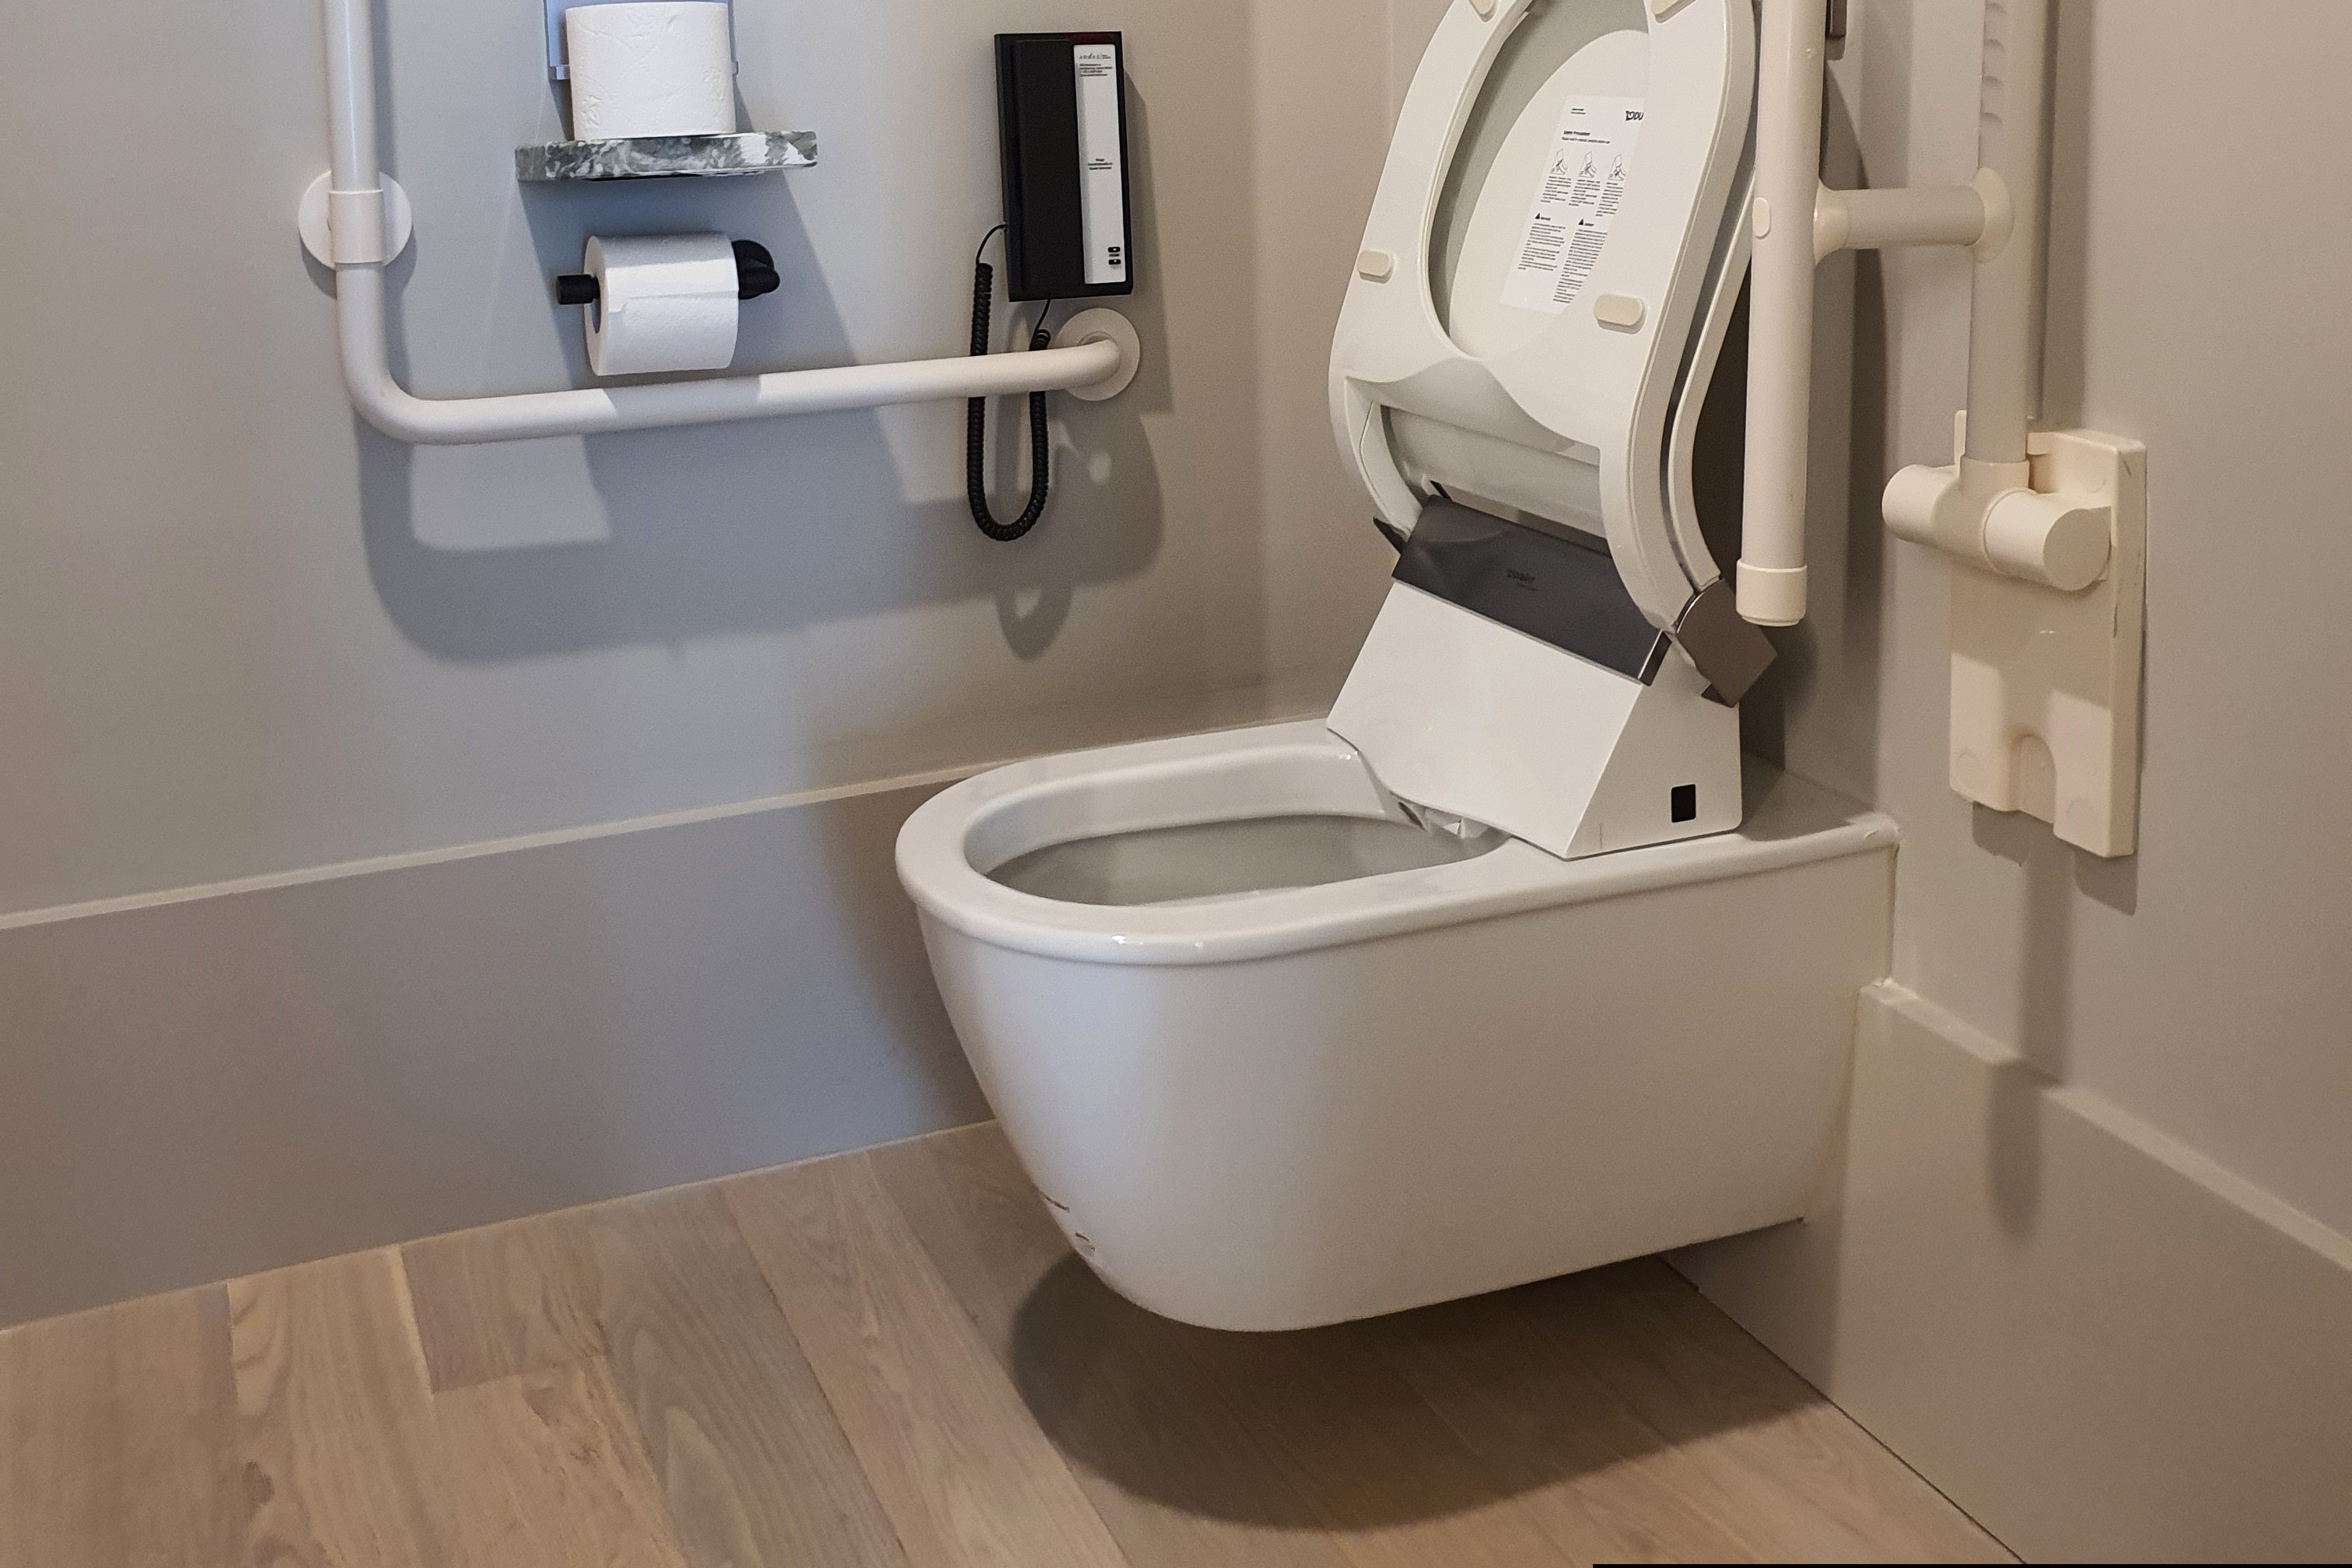 장애인 객실0 : 안전 손잡이가 설치된 화장실